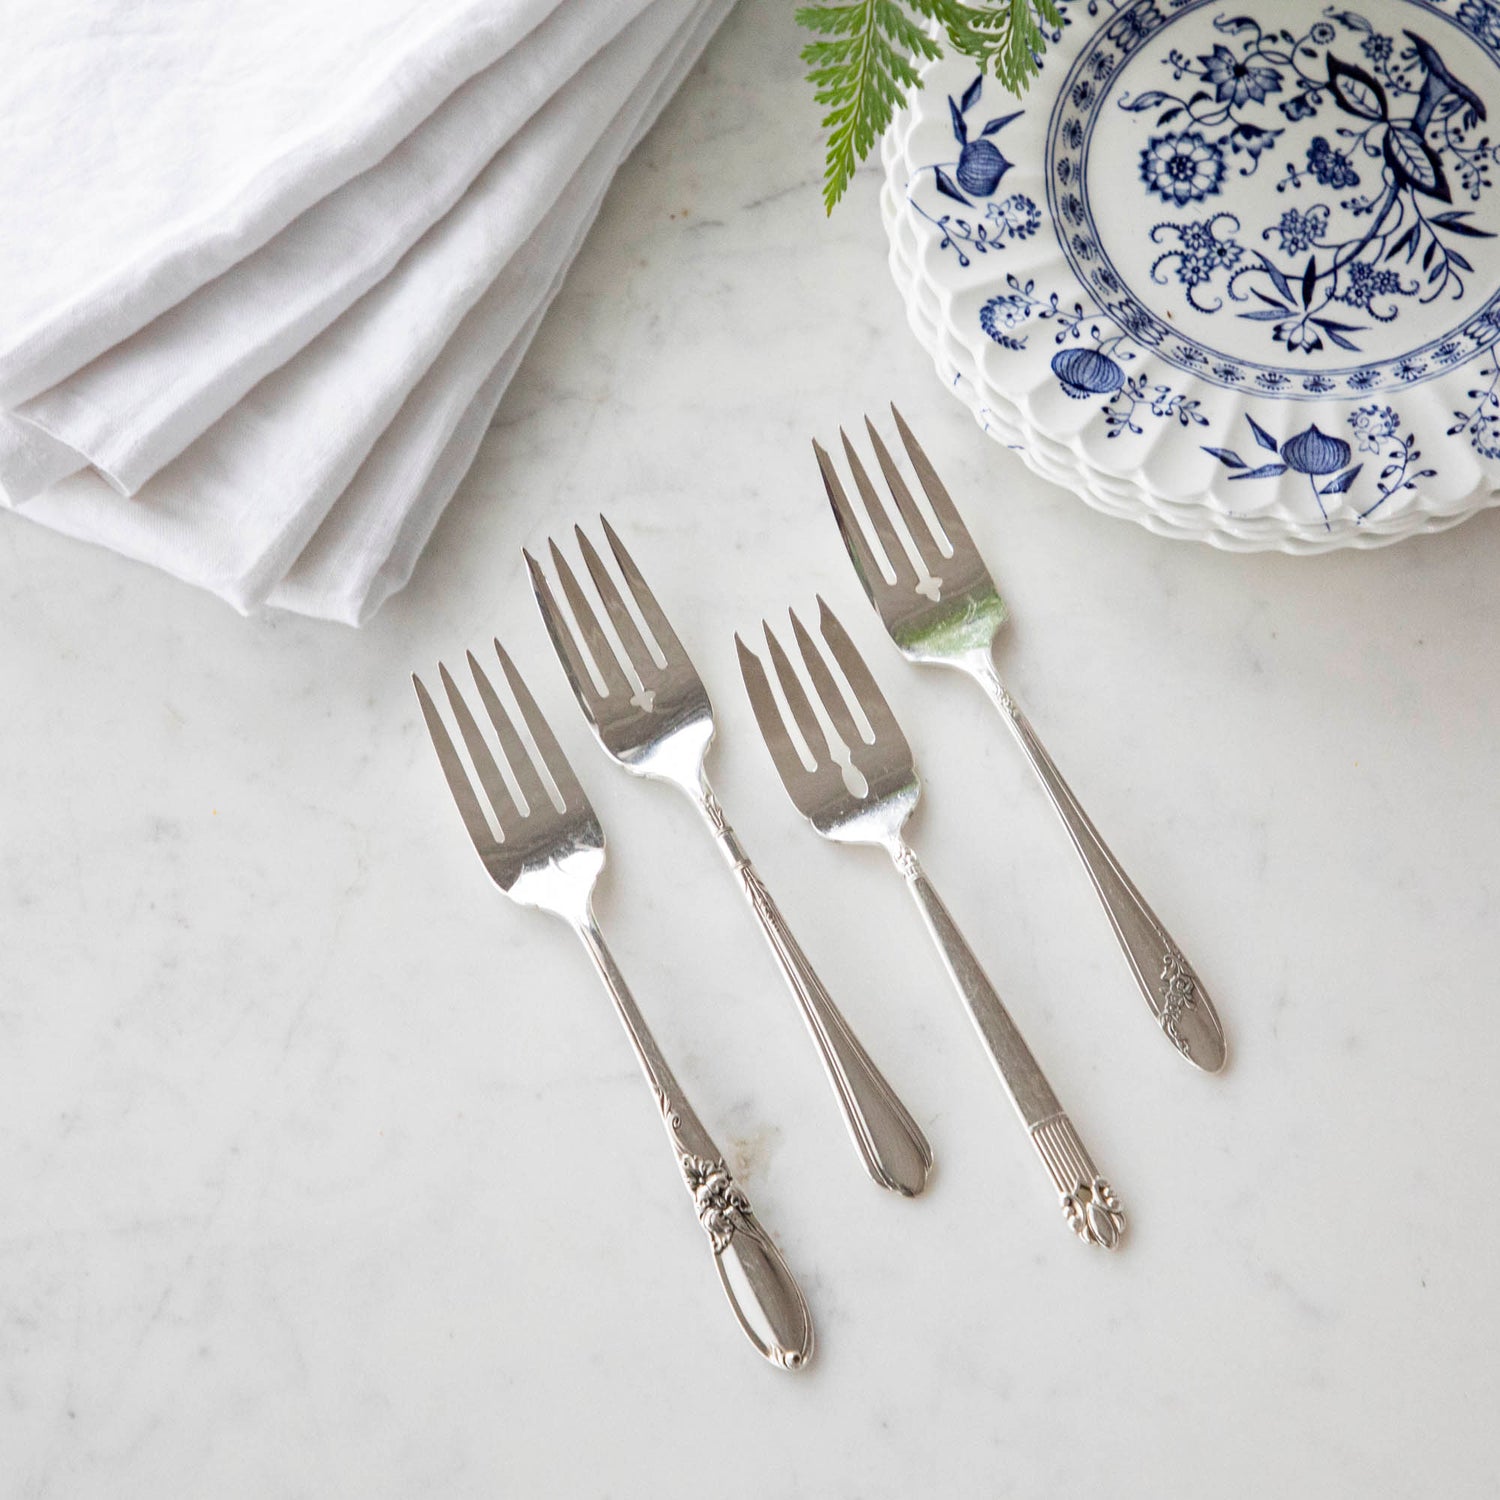 Vintage Silver-Plate Salad Forks set of Four